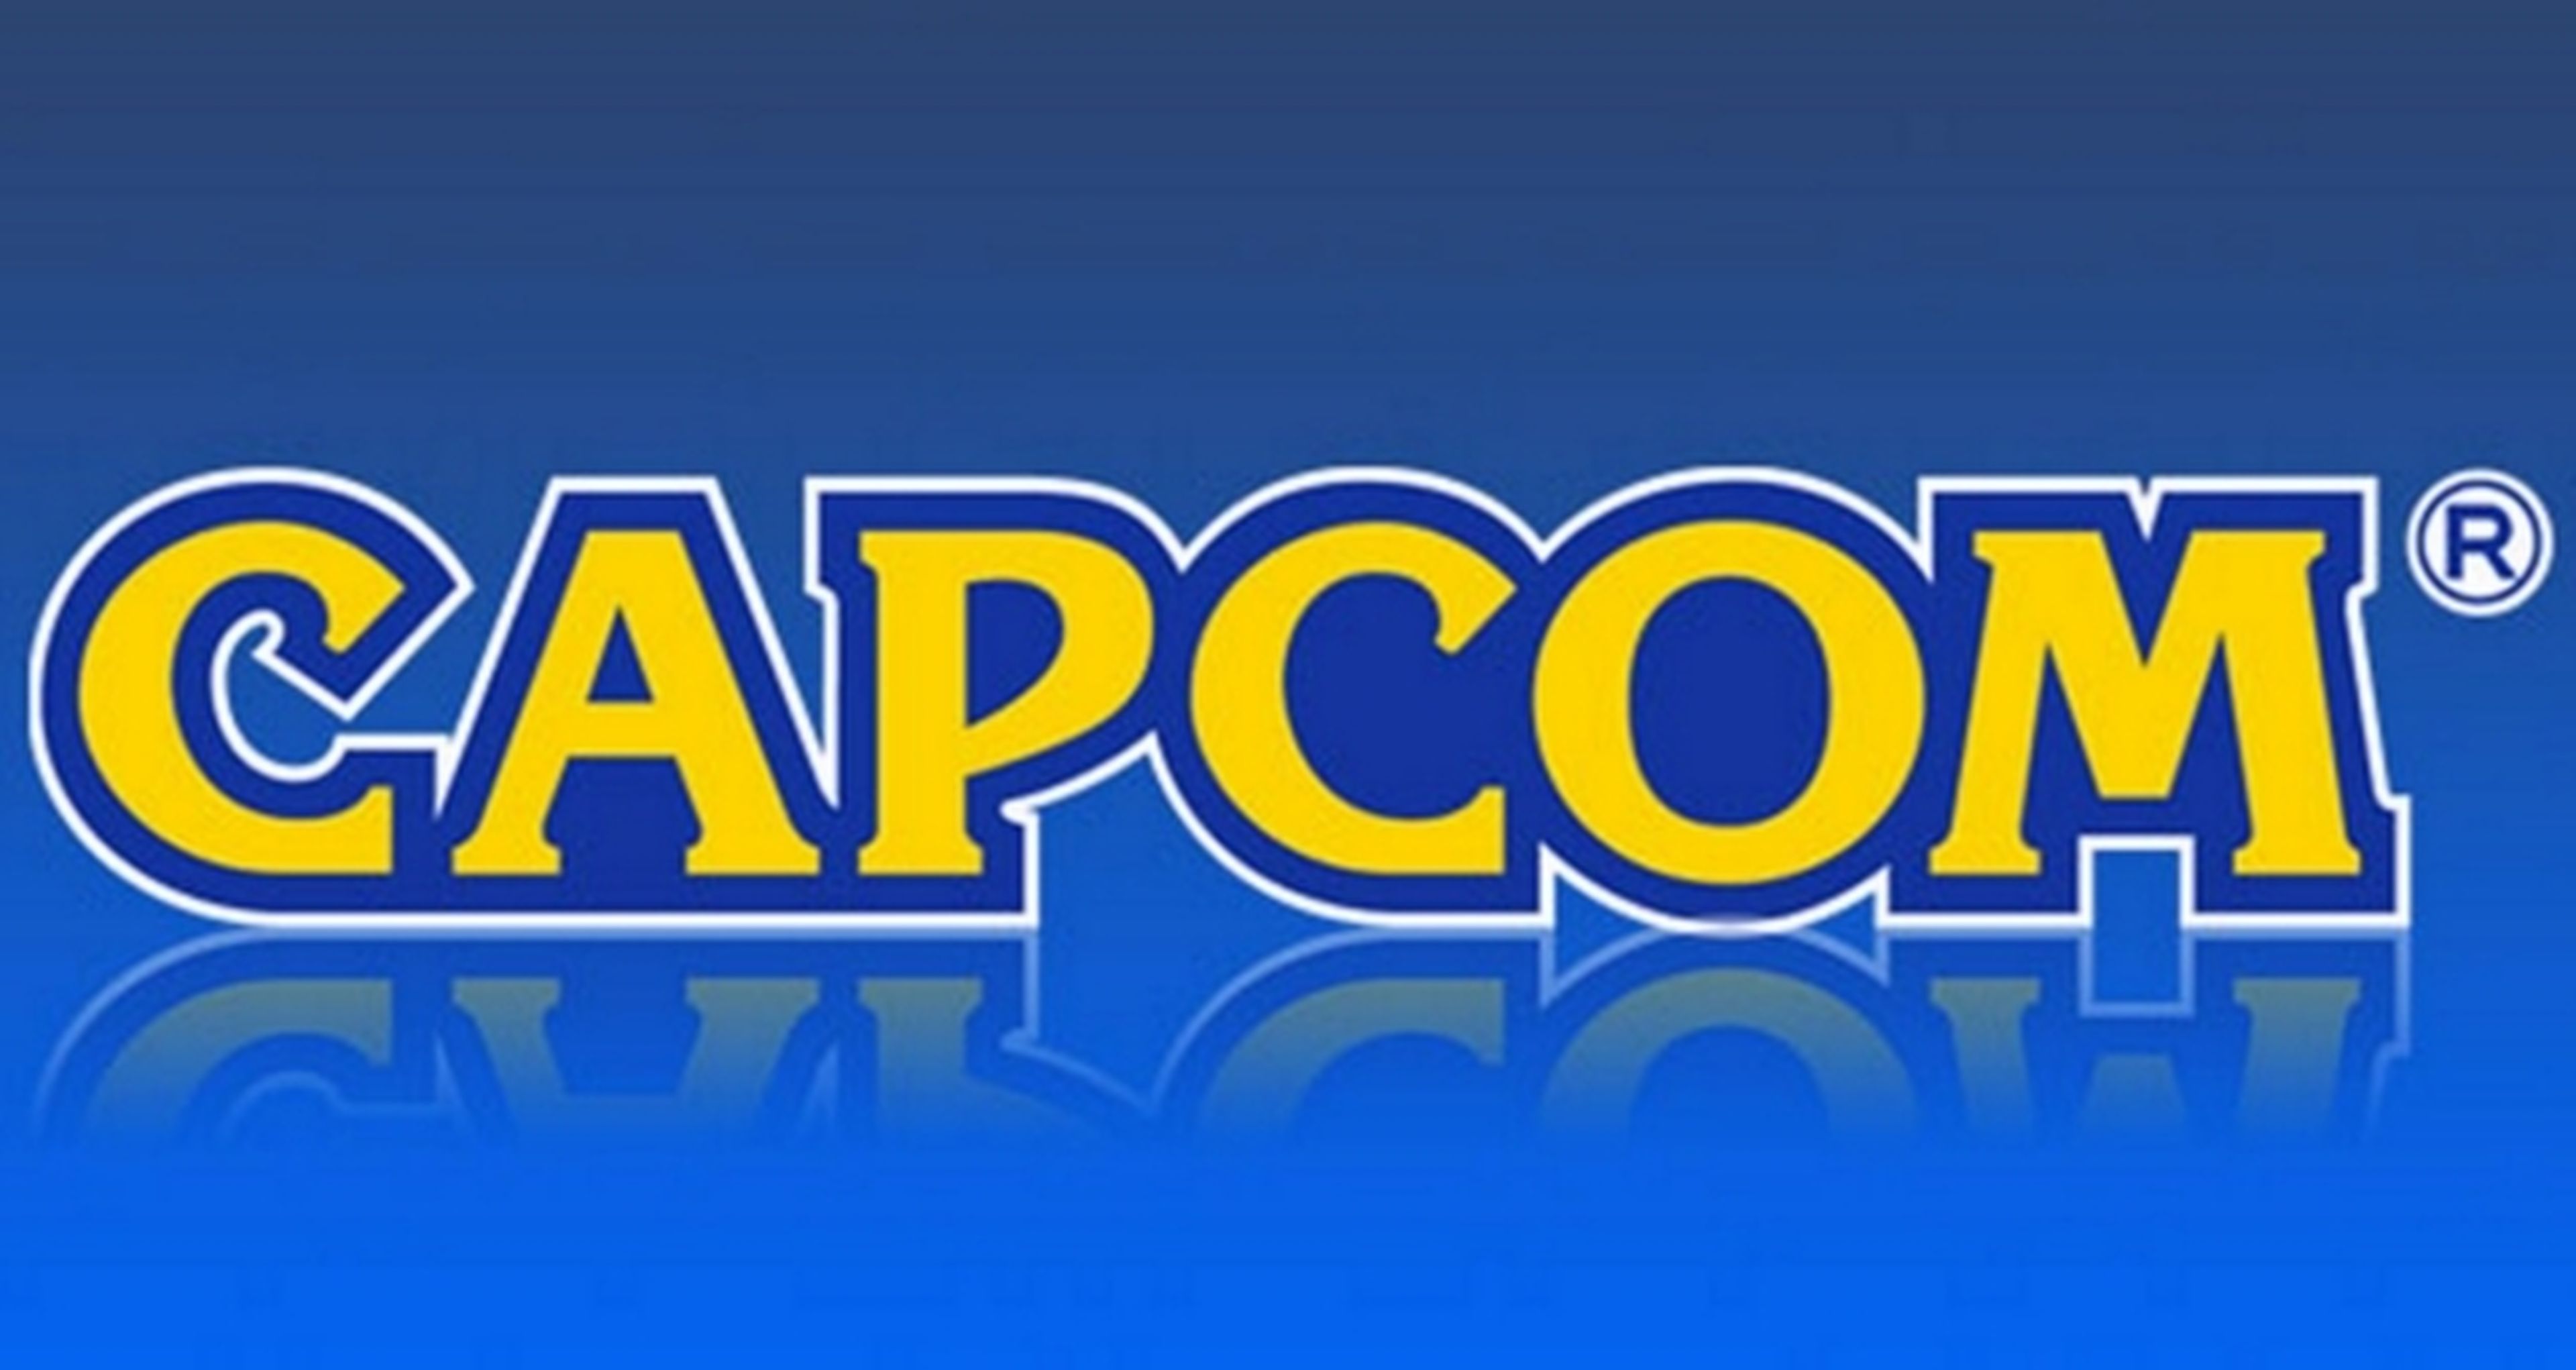 Capcom entra en proceso de reestructuración